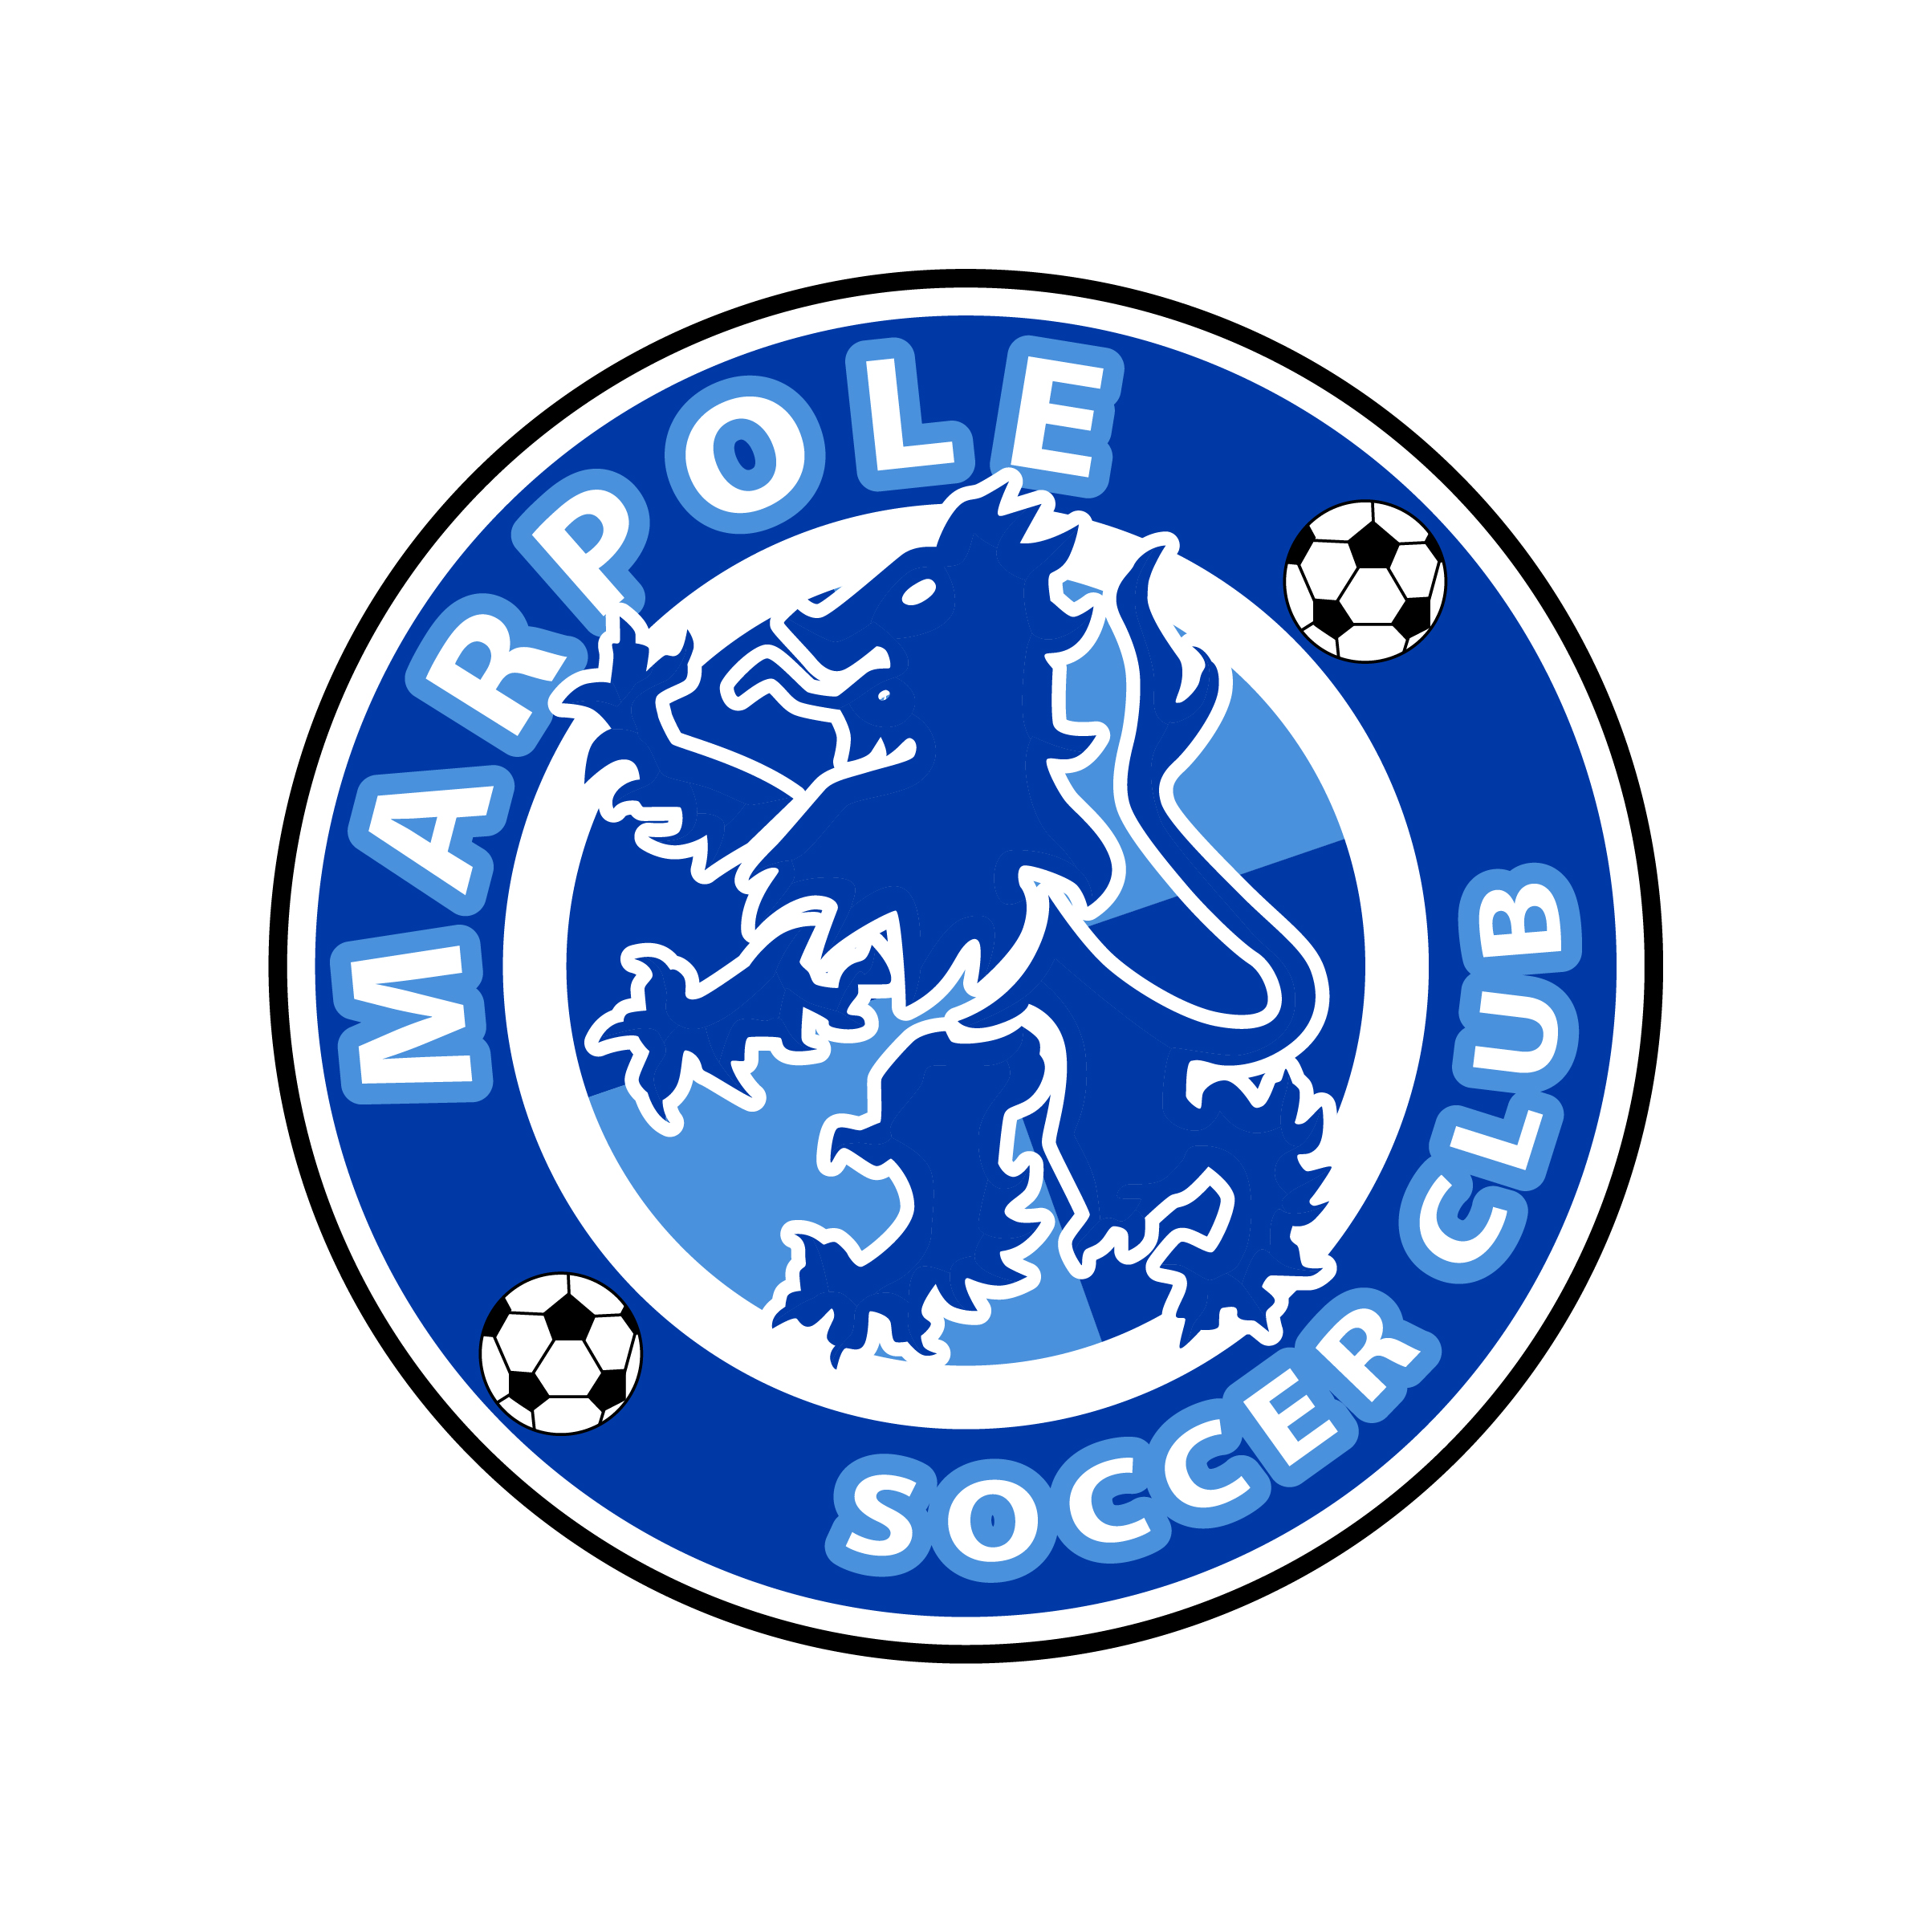 Marpole Soccer Club